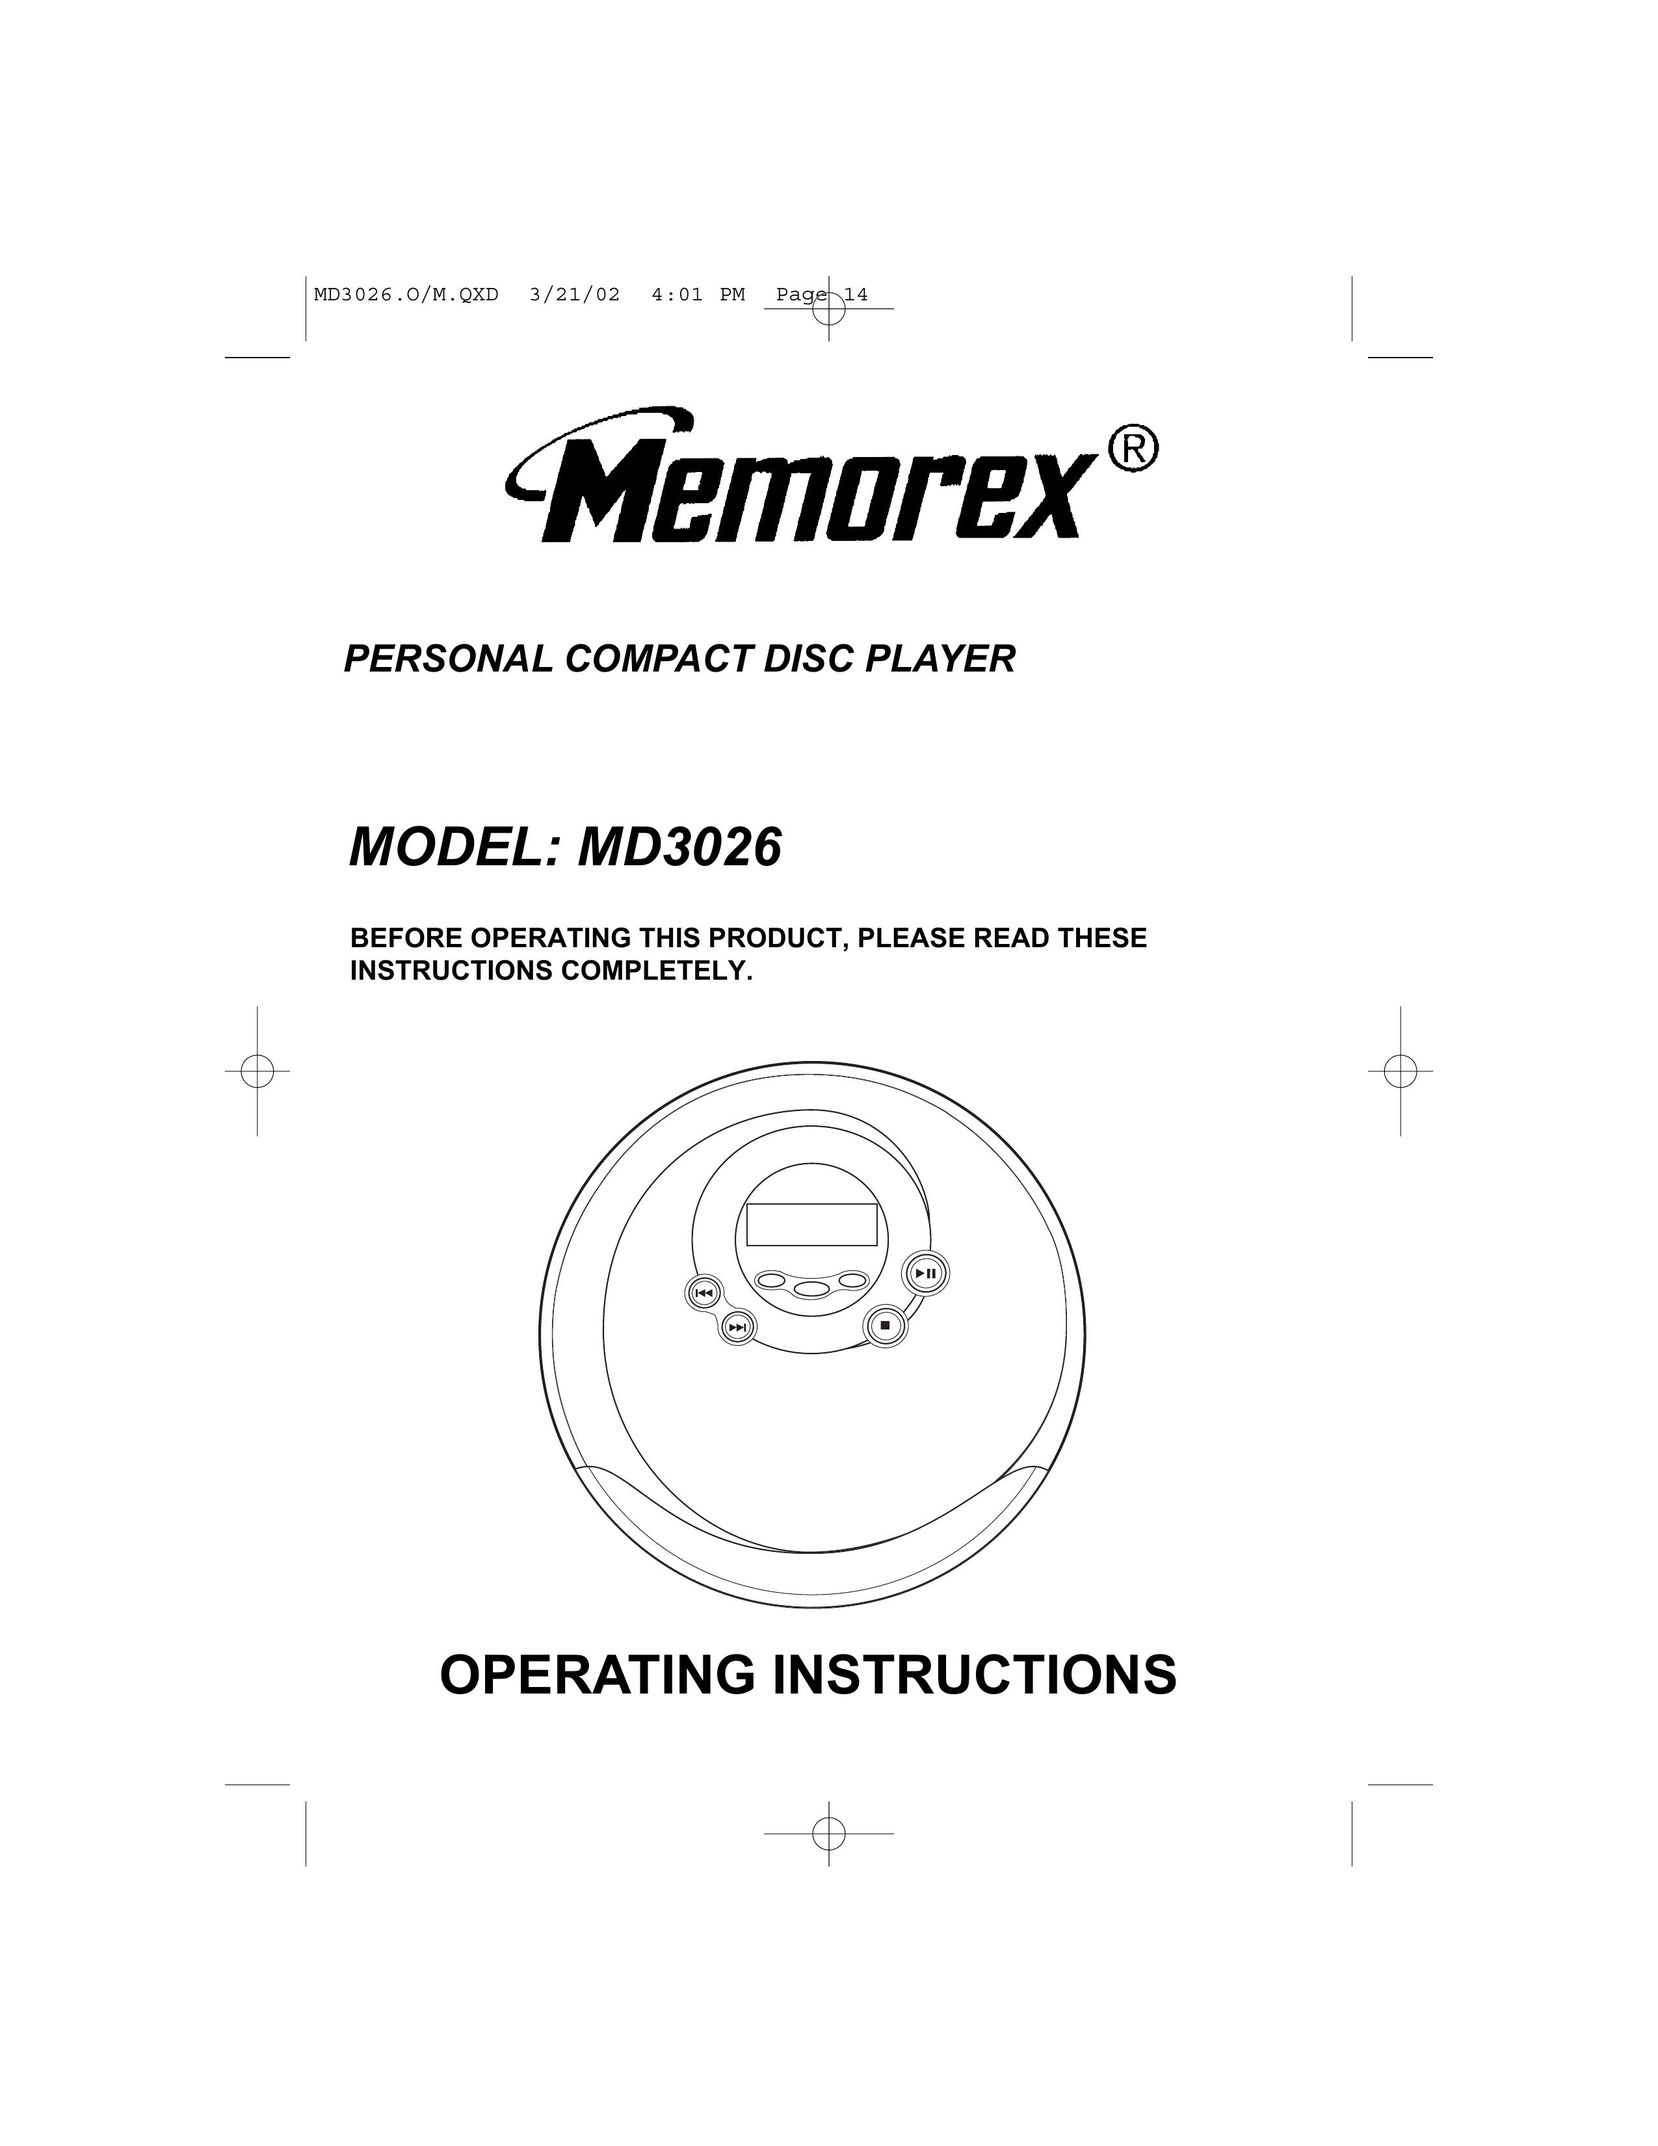 Memorex MD3026 CD Player User Manual